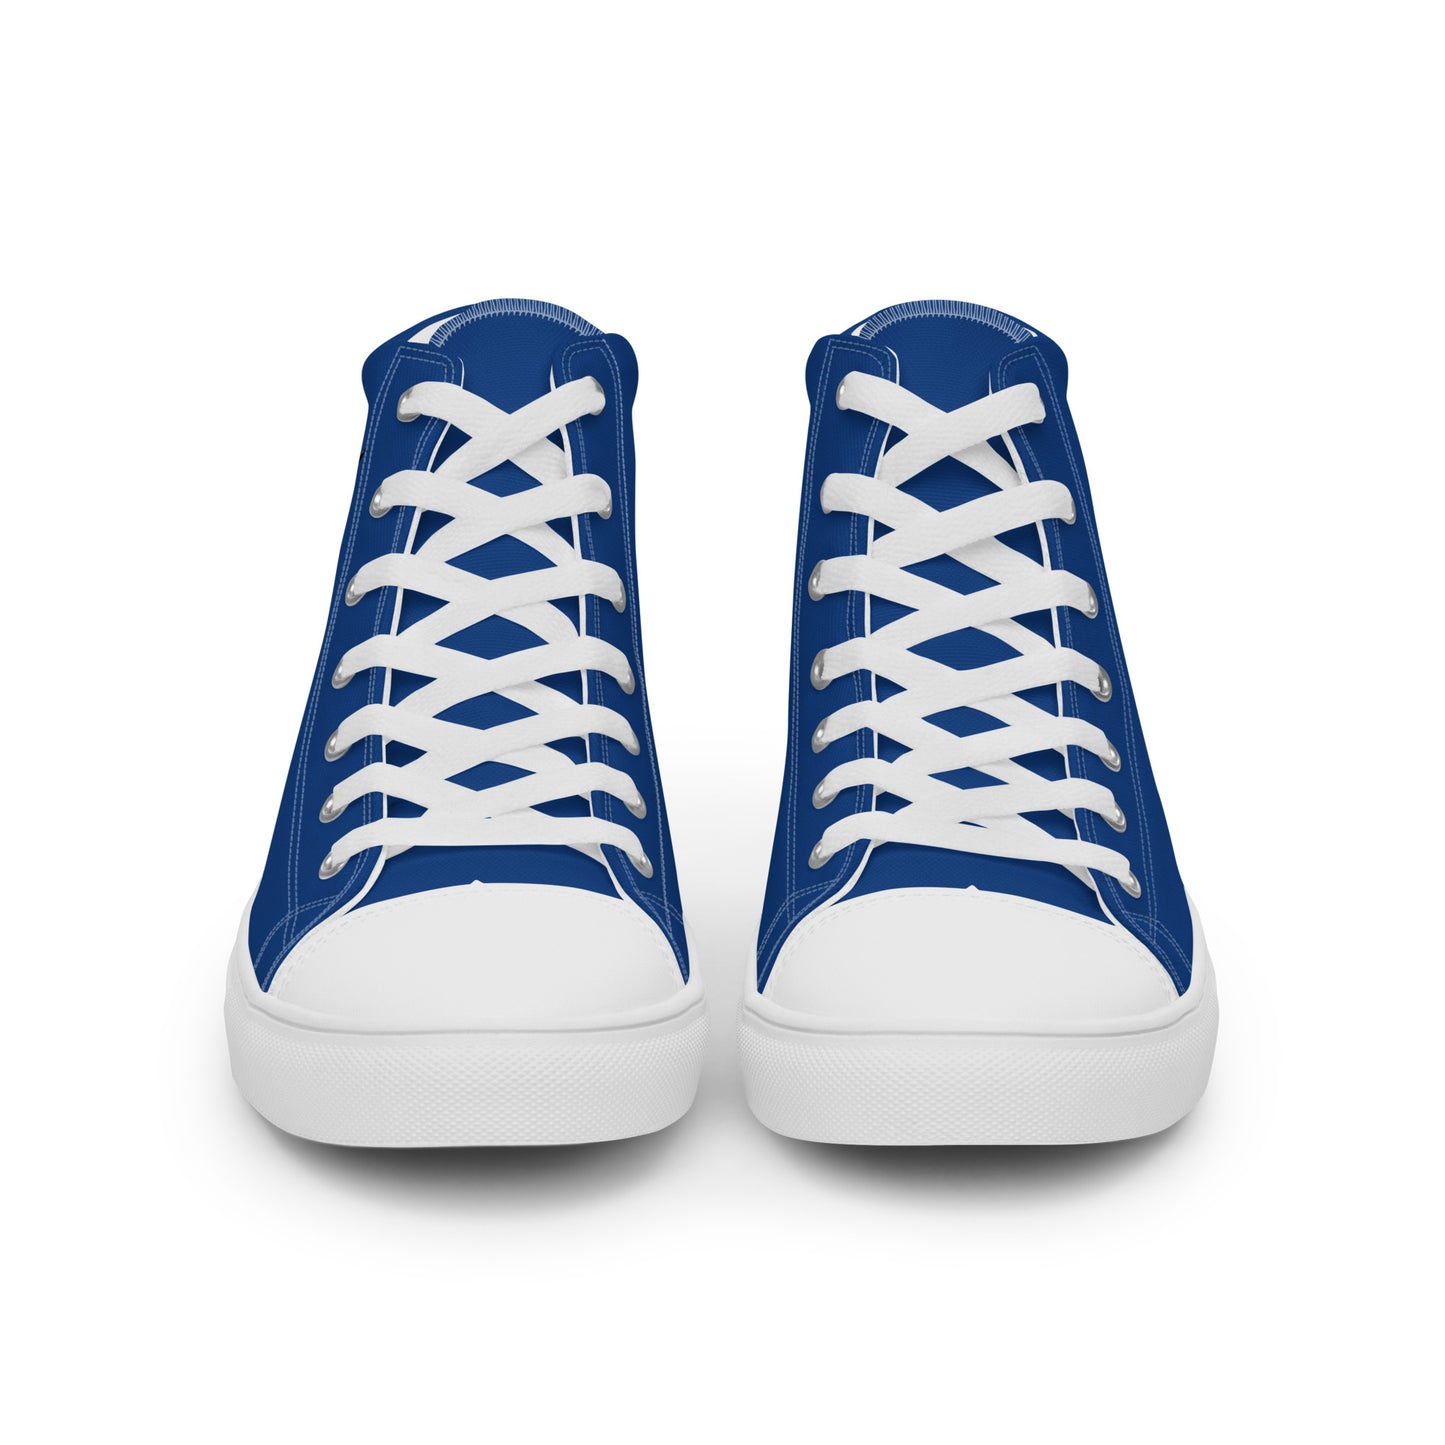 Cuba - Women - Blue - High top shoes